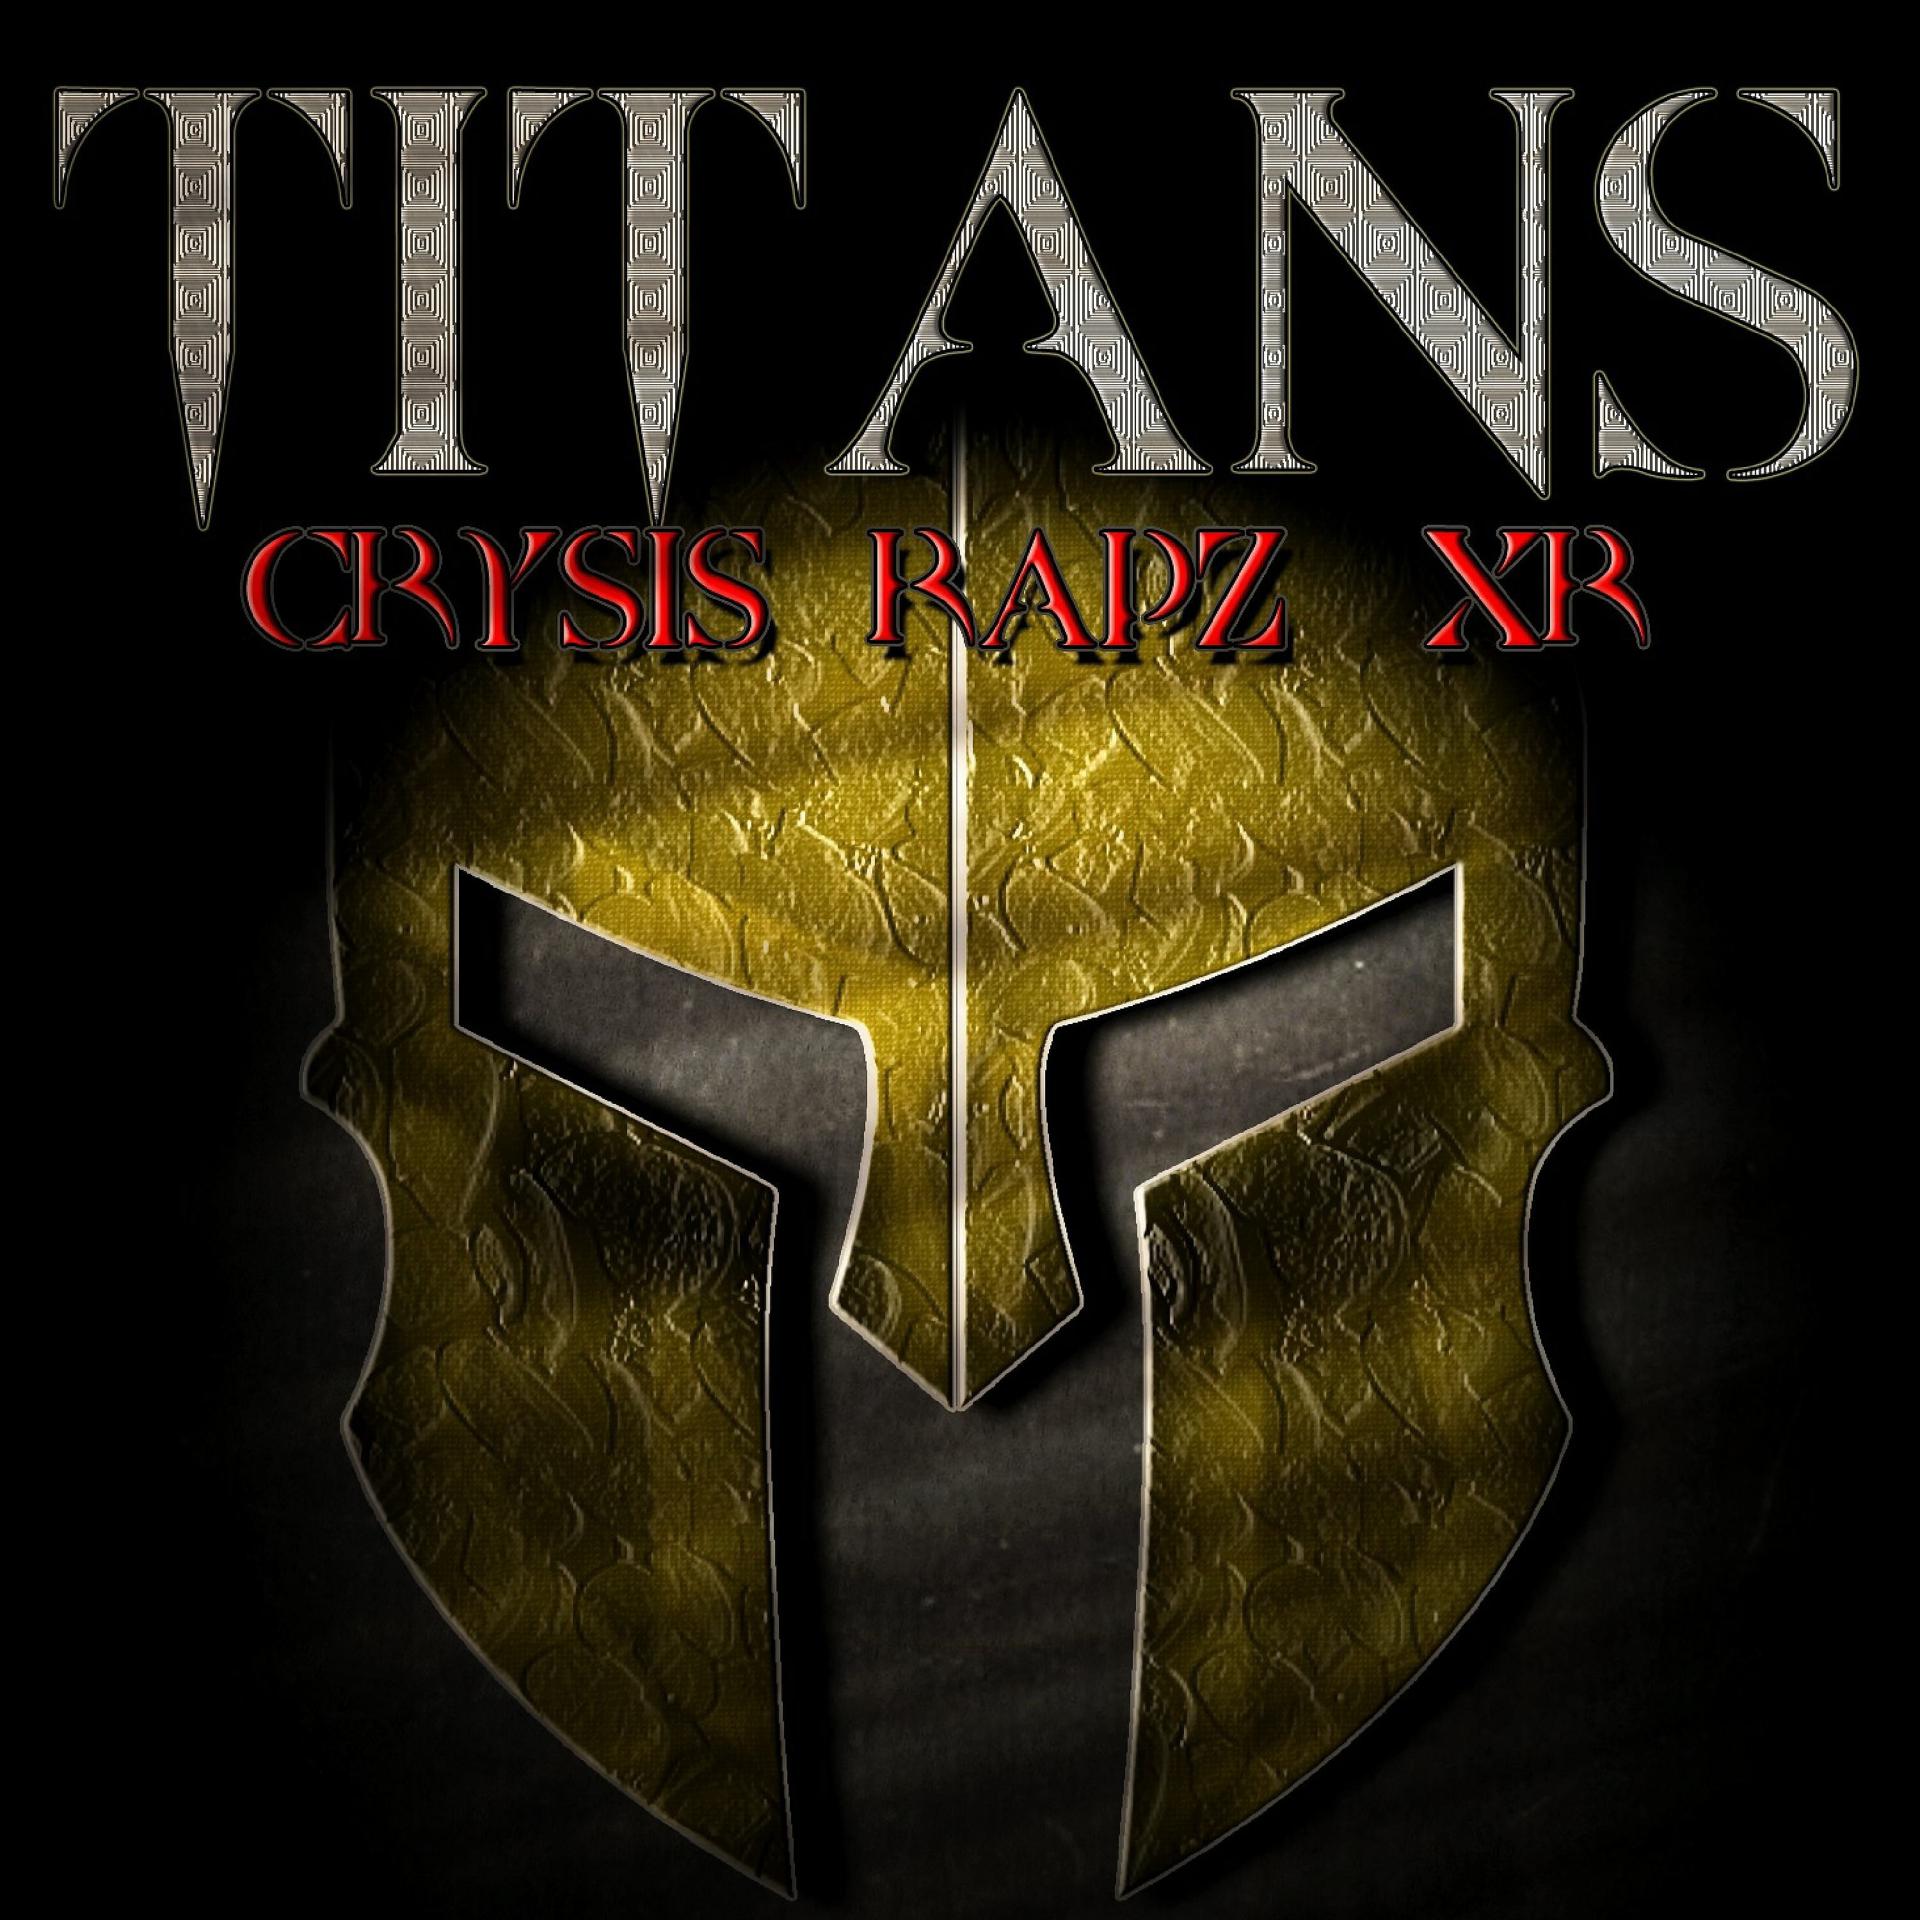 Постер альбома Titans